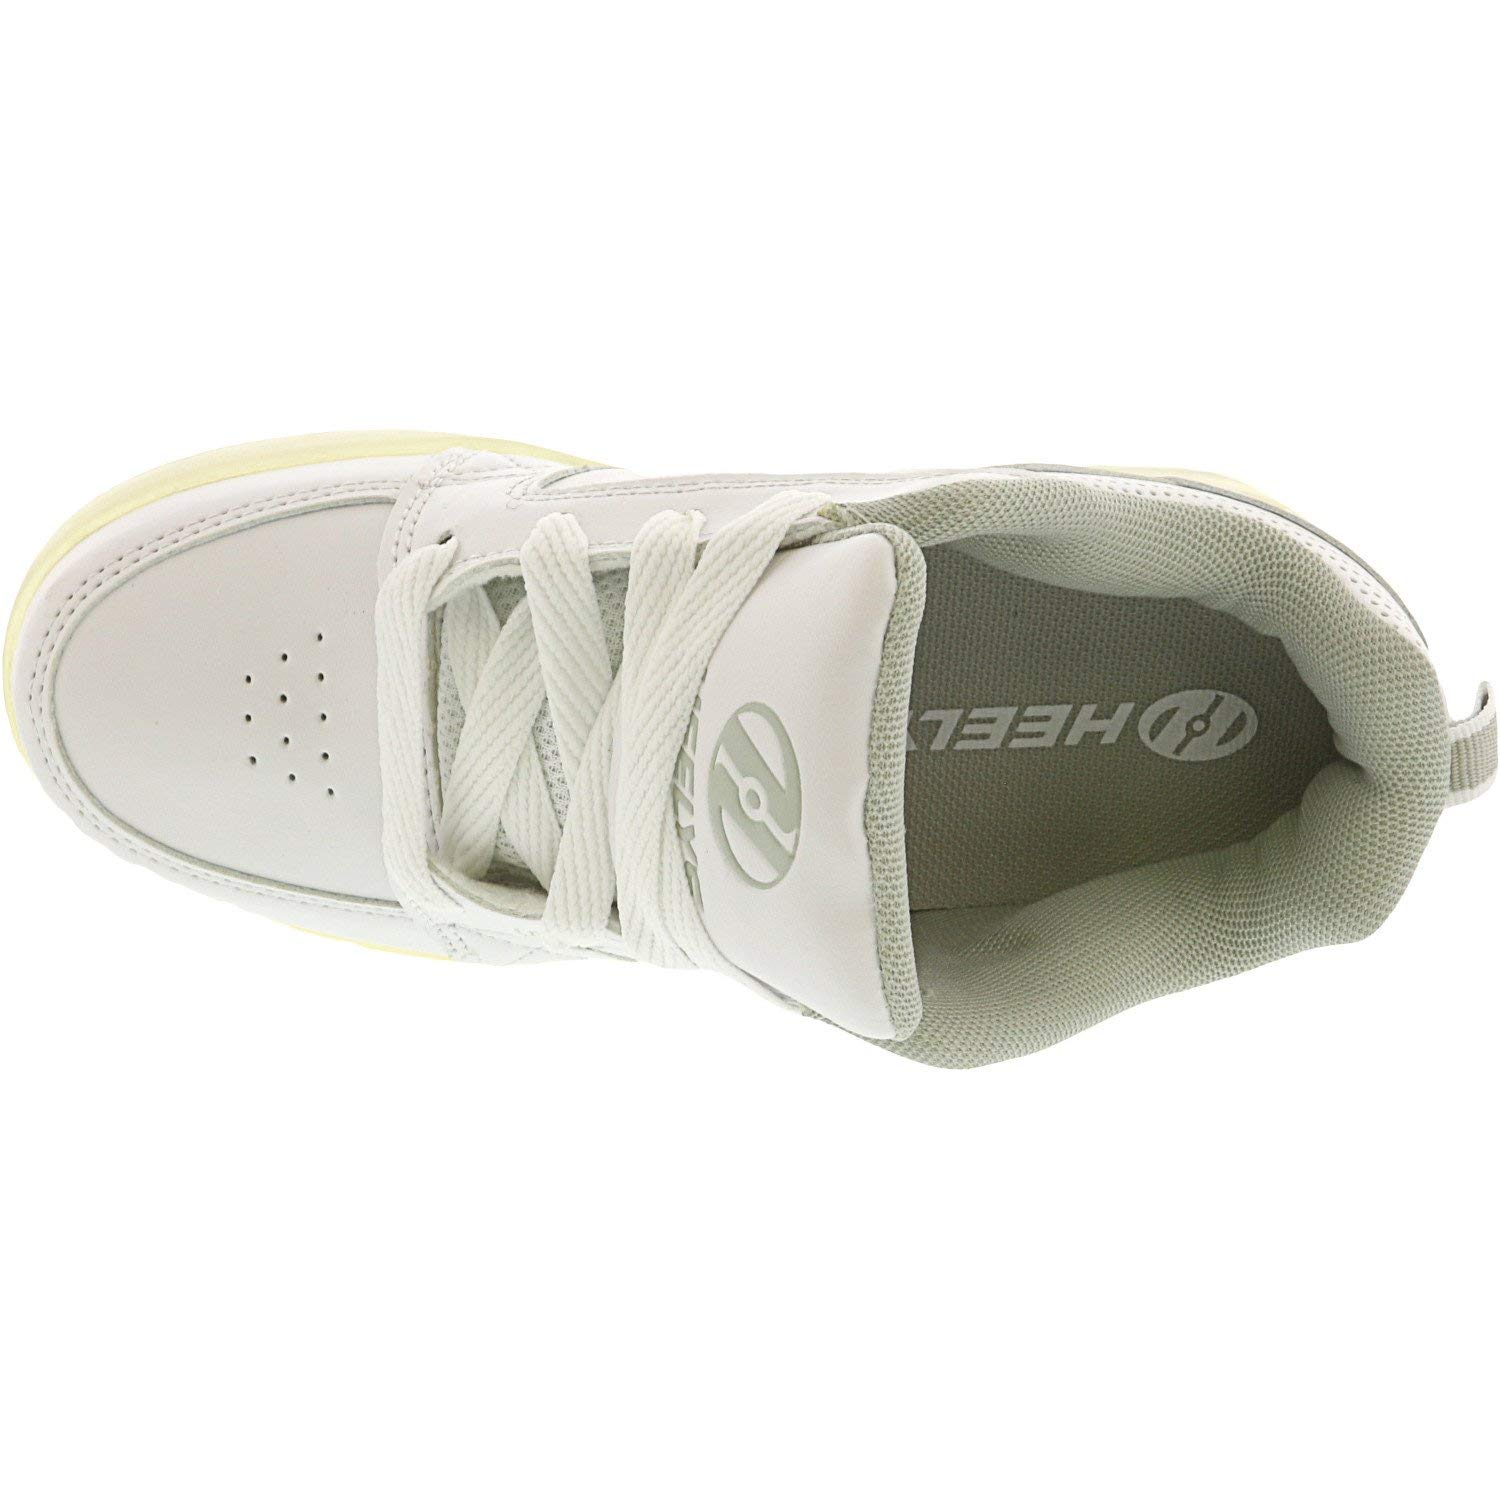 HEELYS Unisex-Child Premium Lo Wheeled Heel Shoe